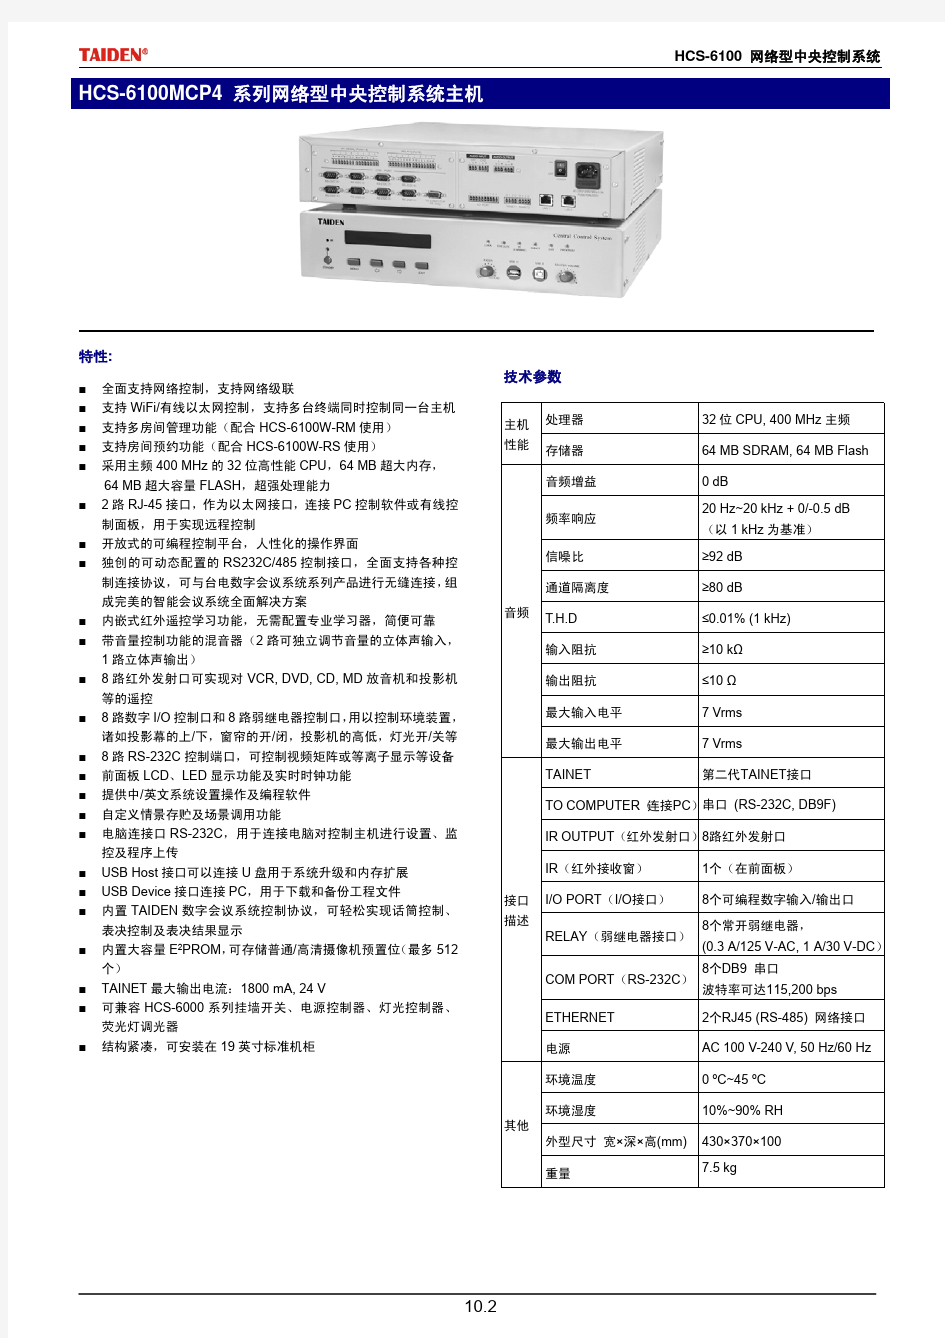 HCS-6100智能中央控制系统数据手册